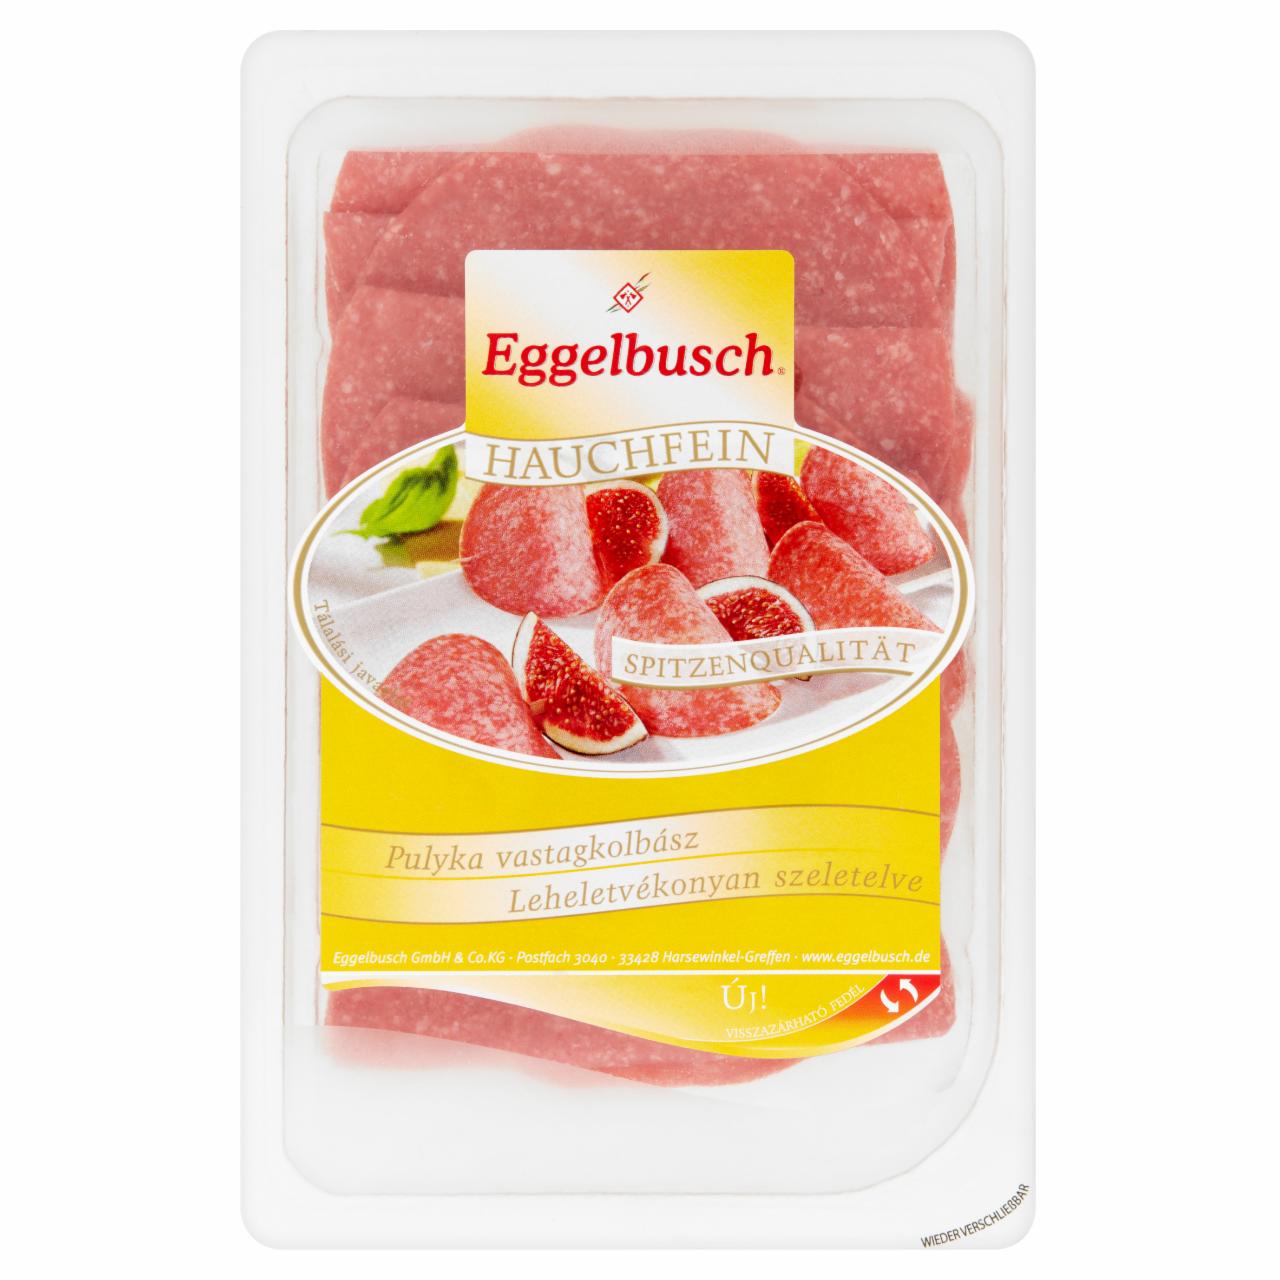 Képek - Eggelbusch Hauchfein szeletelt pulyka vastagkolbász 150 g